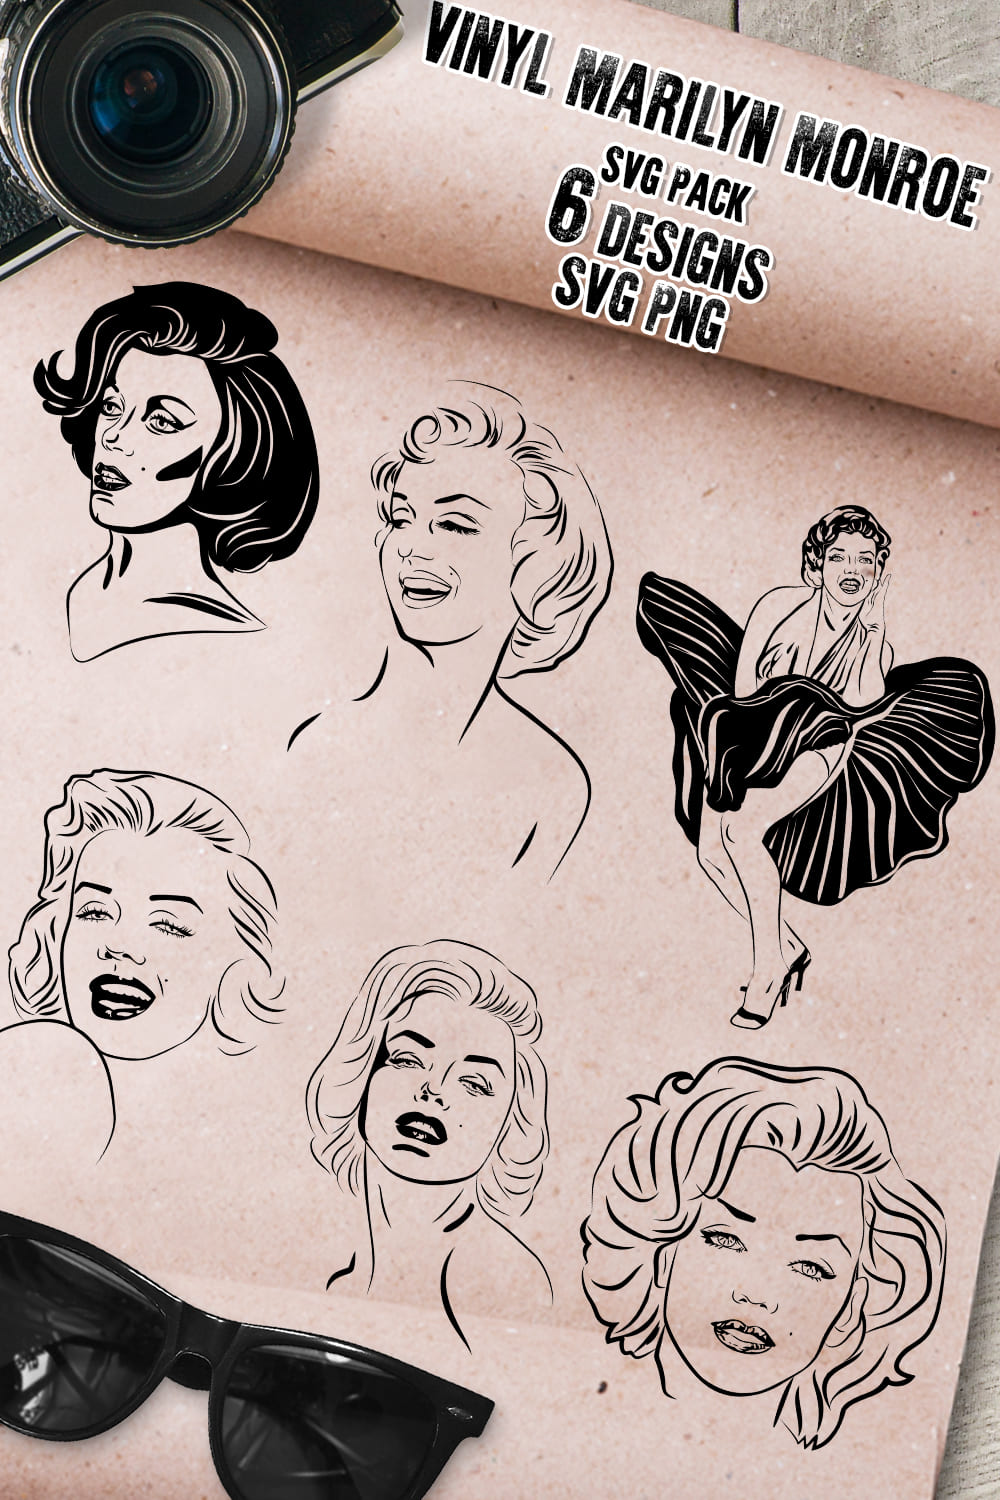 VIntage Monroe illustrations.